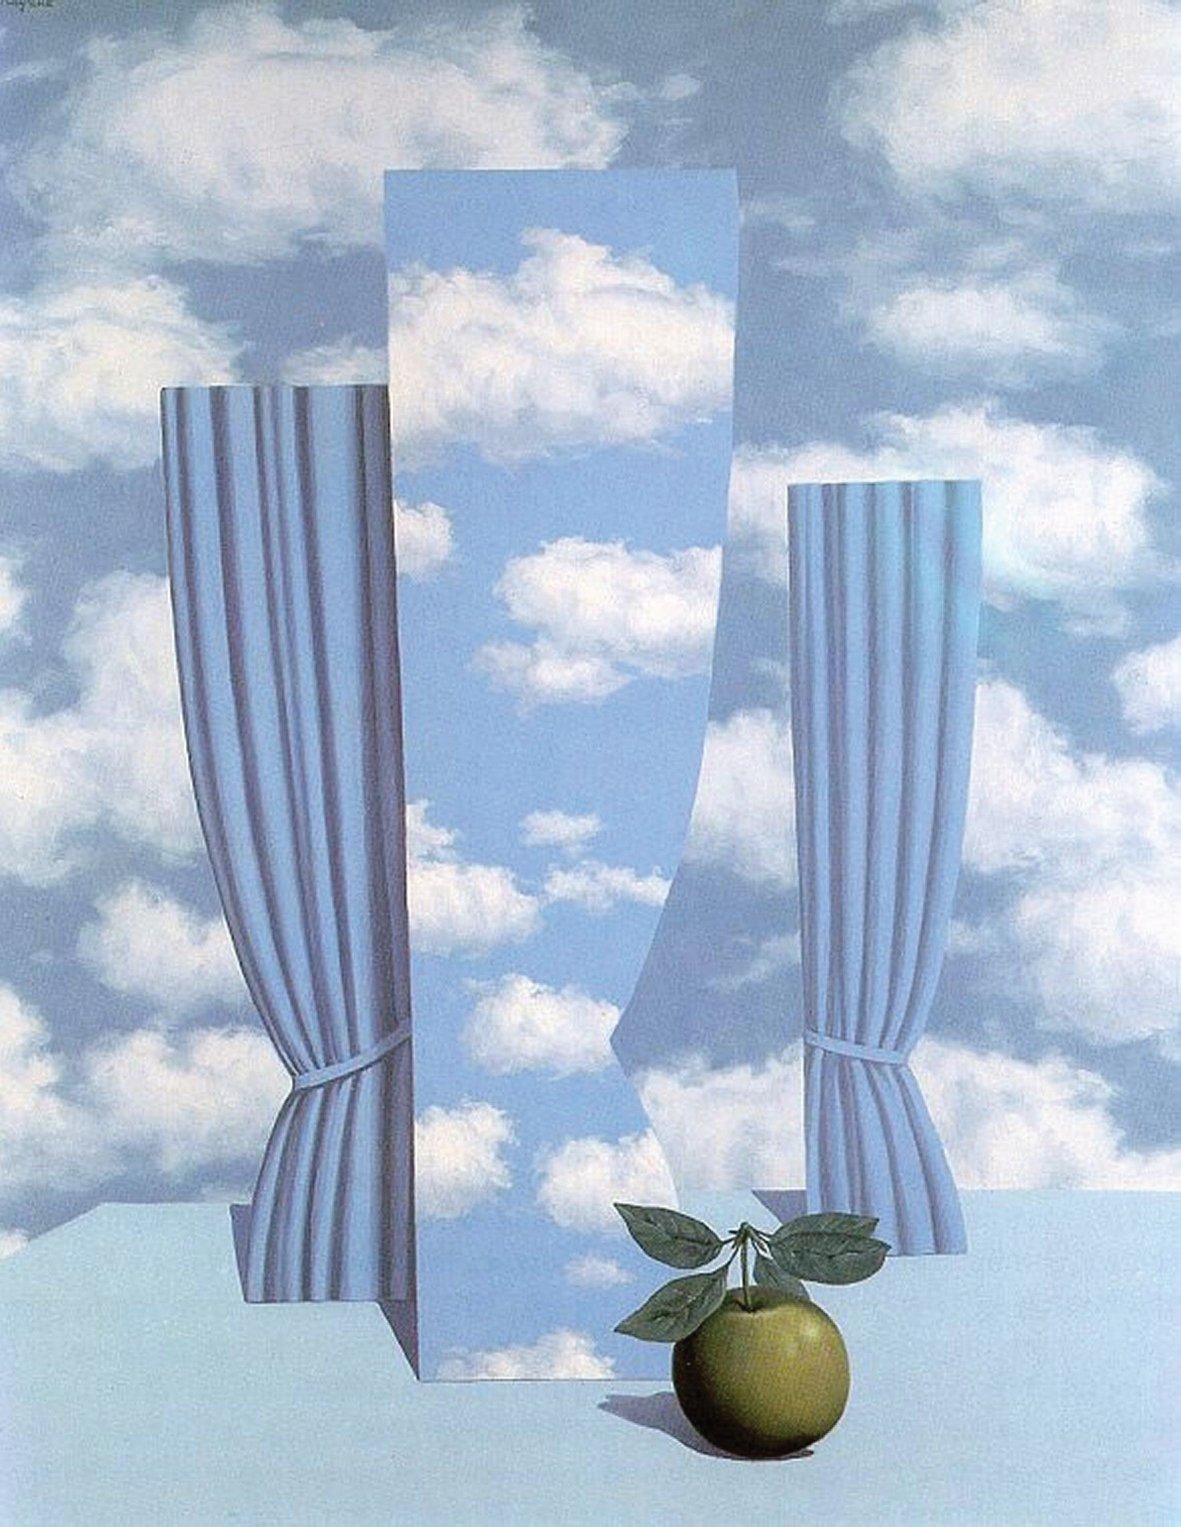 Quadro Magritte. arteterapia scrittura autobiografica e gestione delle emozioni.